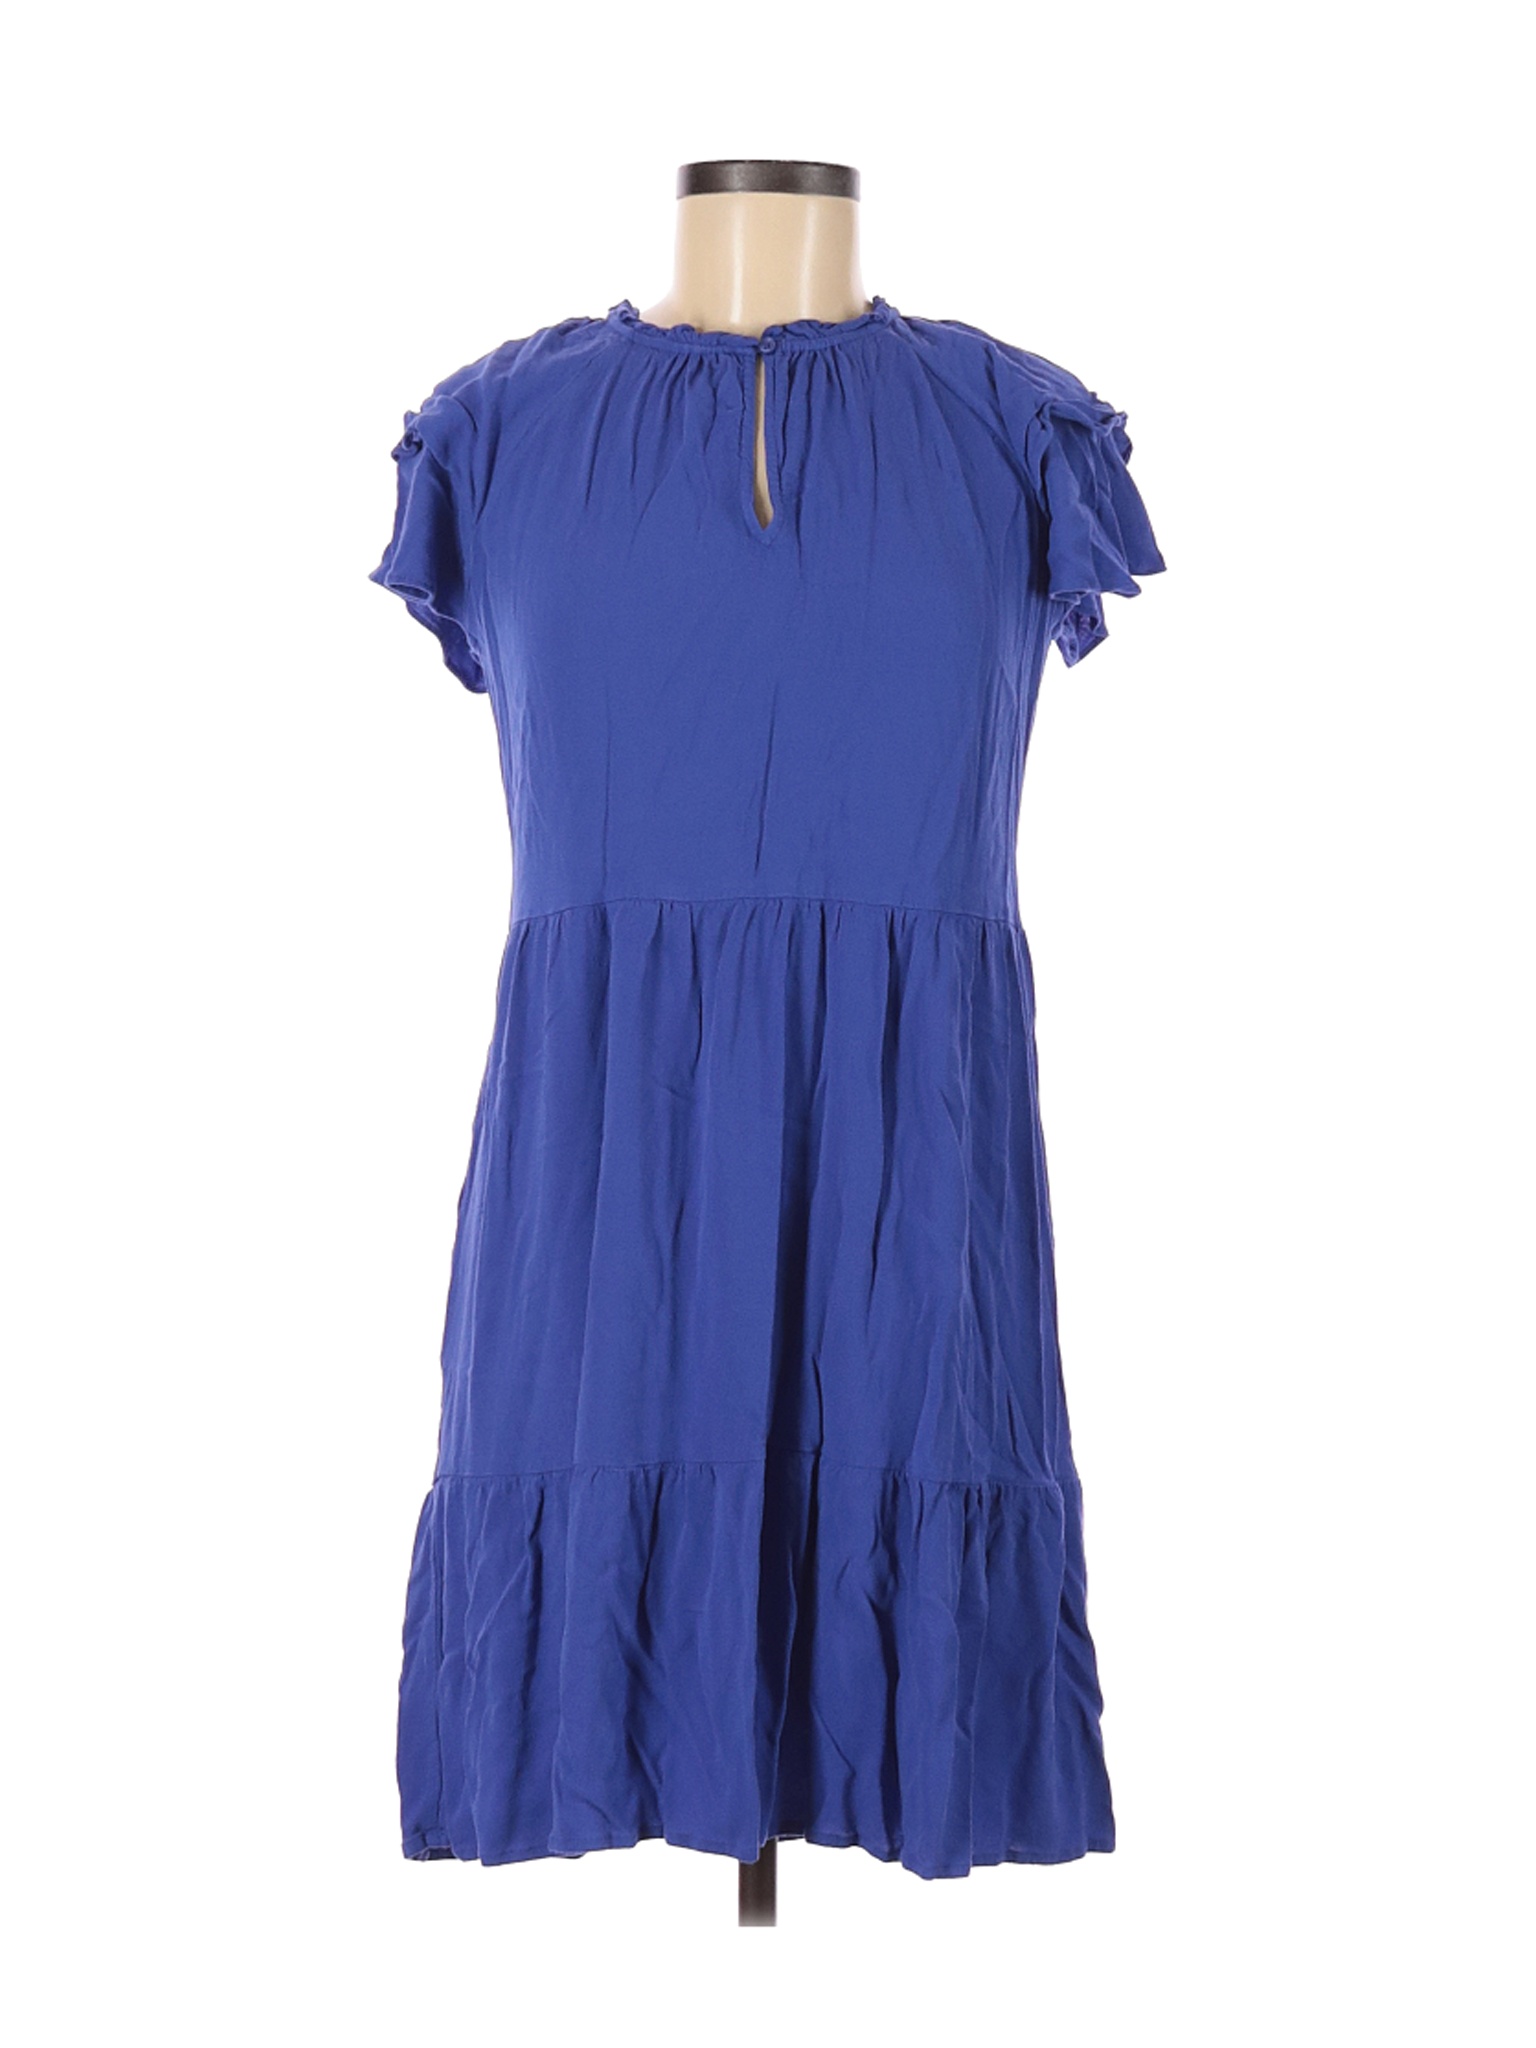 Old Navy Women Blue Casual Dress S | eBay